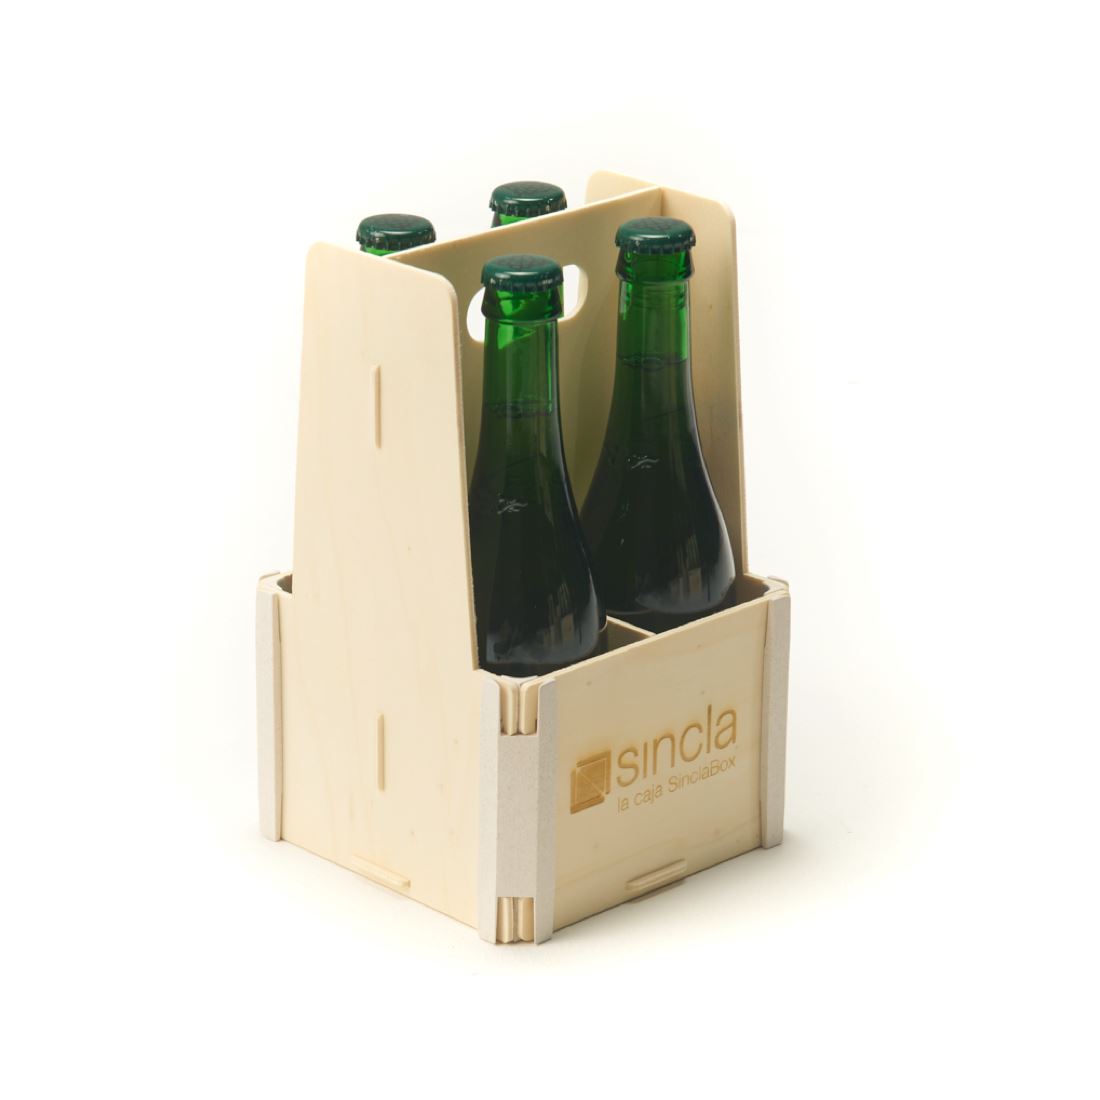 Cajas para cerveza Sincla-box 